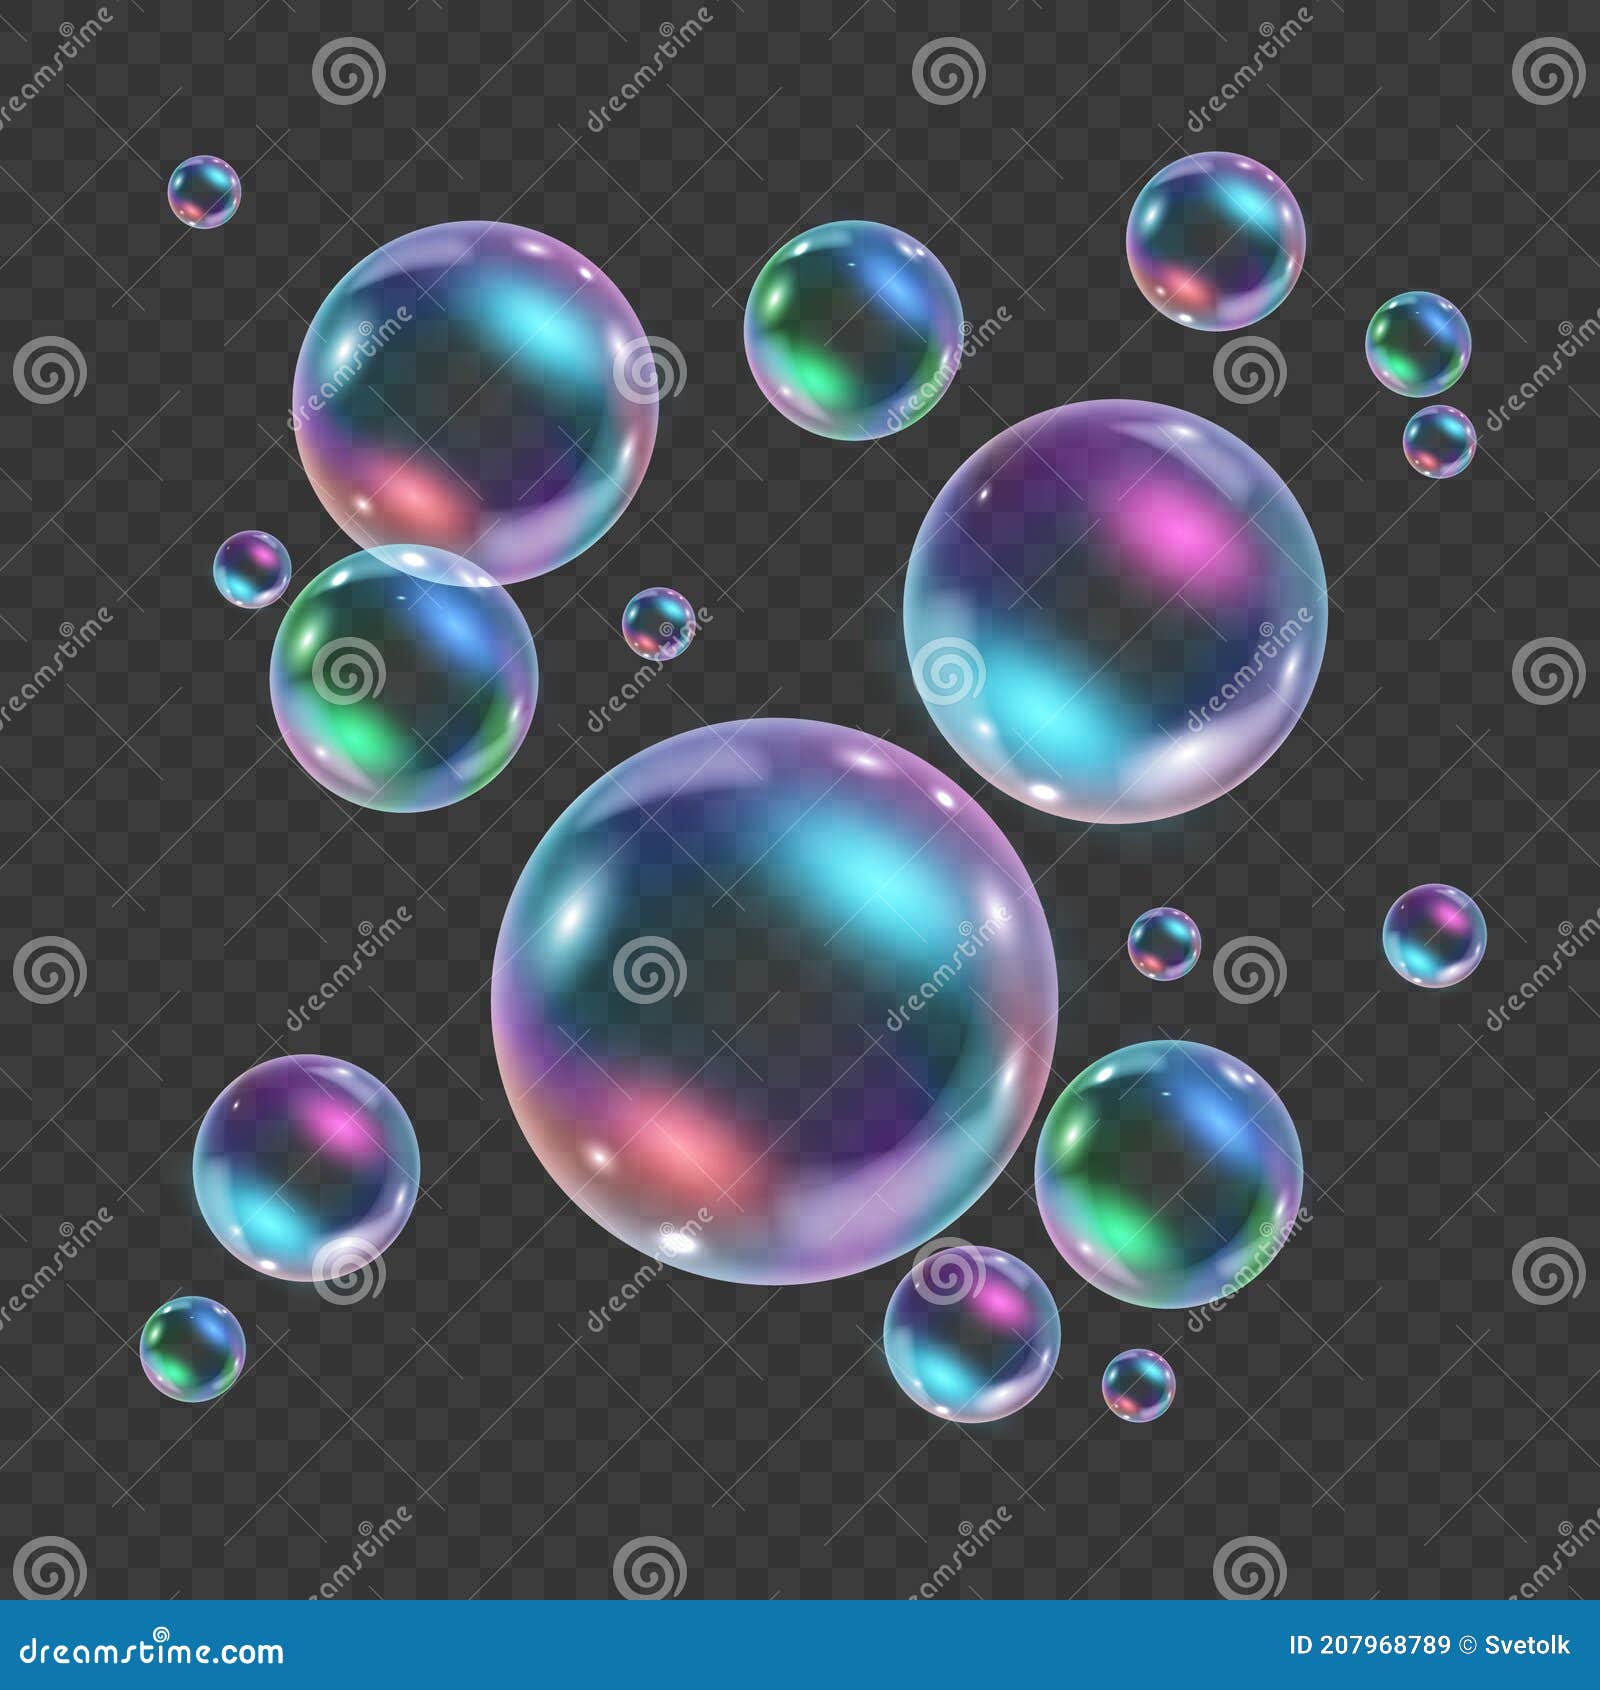 Bubble PNG - Speech Bubble, Soap Bubbles, Water Bubbles, Thought